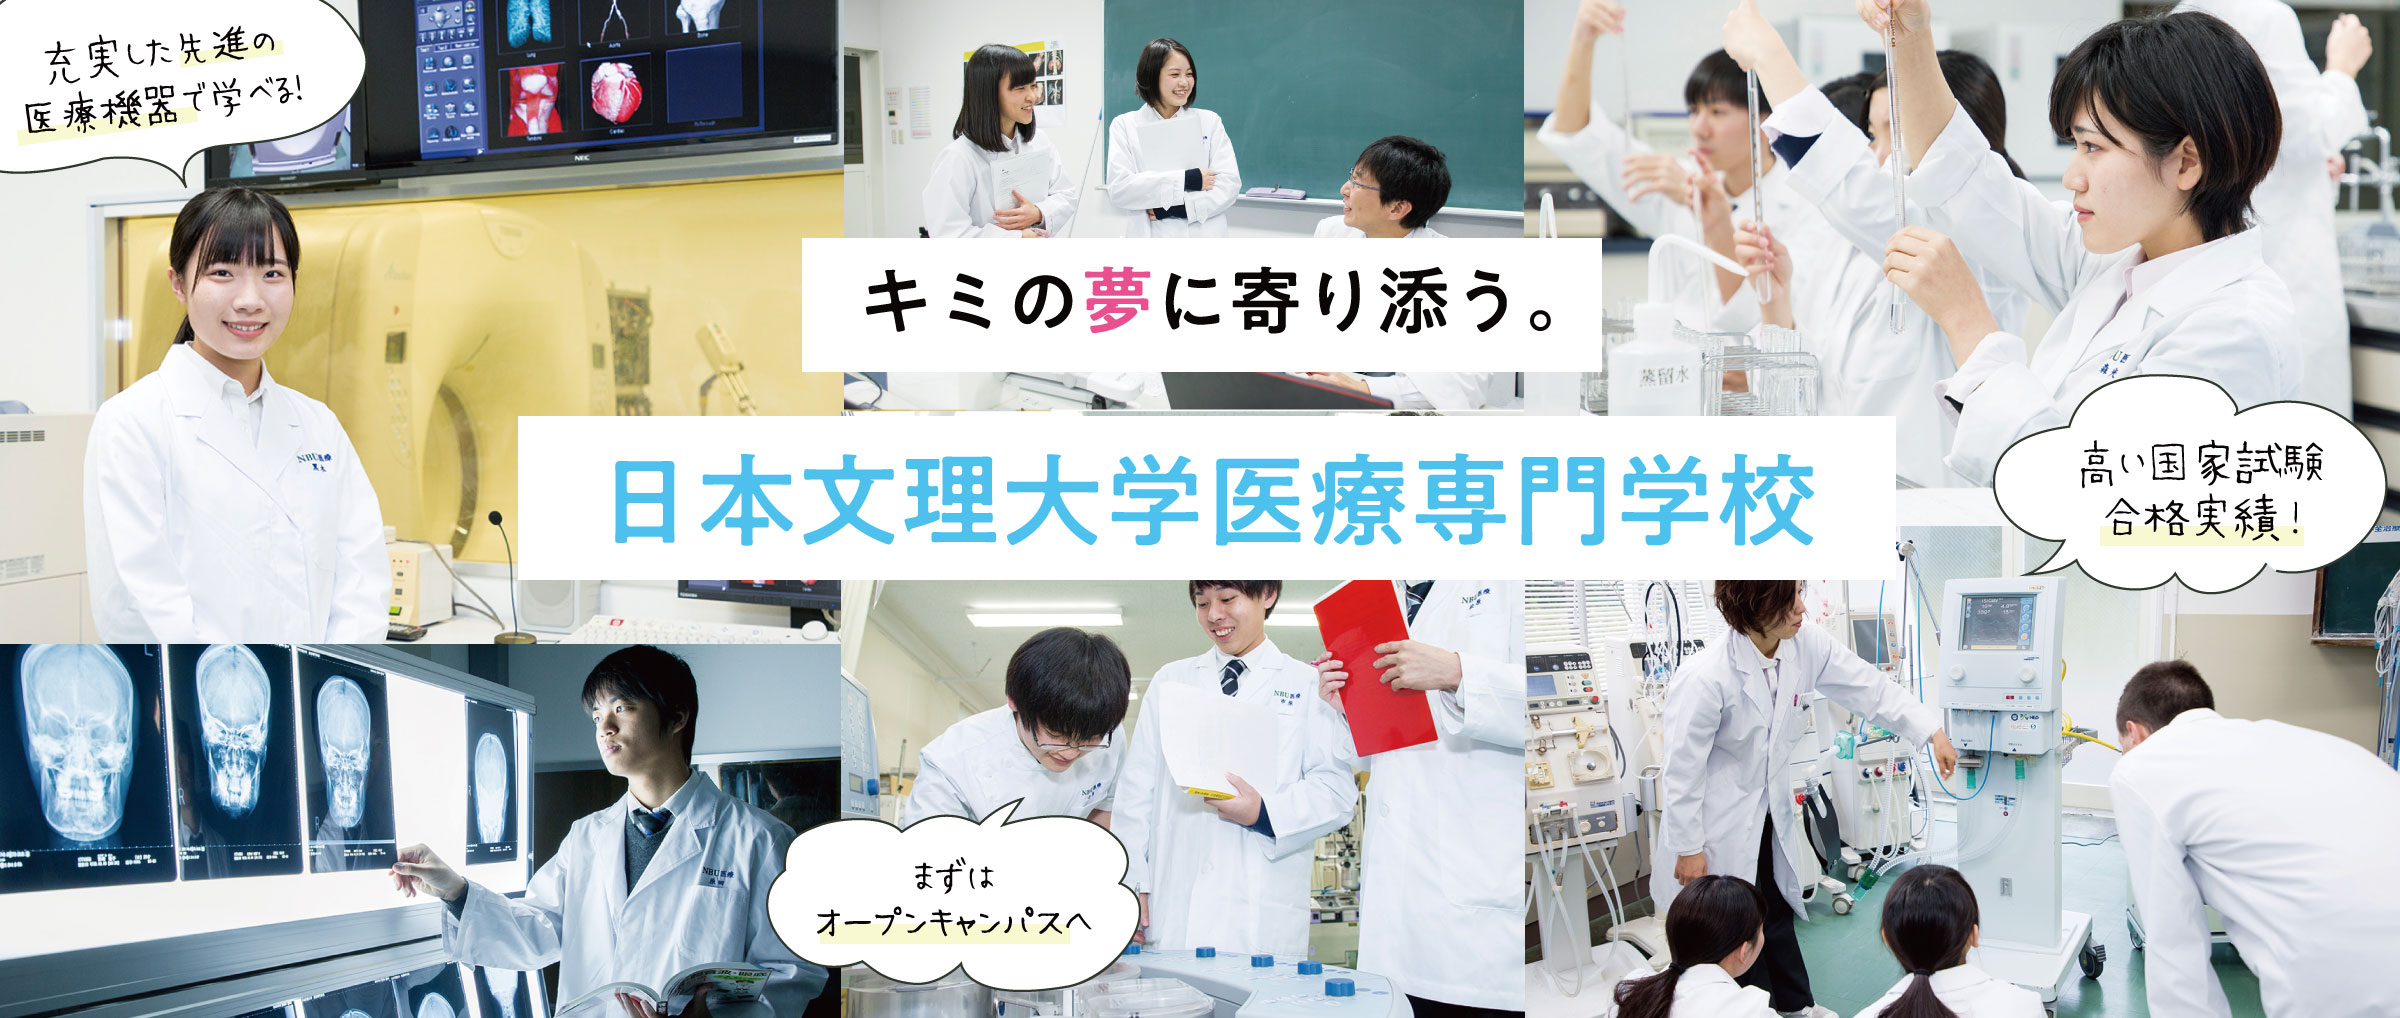 キミの夢に寄り添う。 日本文理大学医療専門学校 充実した先進の医療機器で学べる！ 高い国家試験合格実績！ まずはオープンキャンパスへ